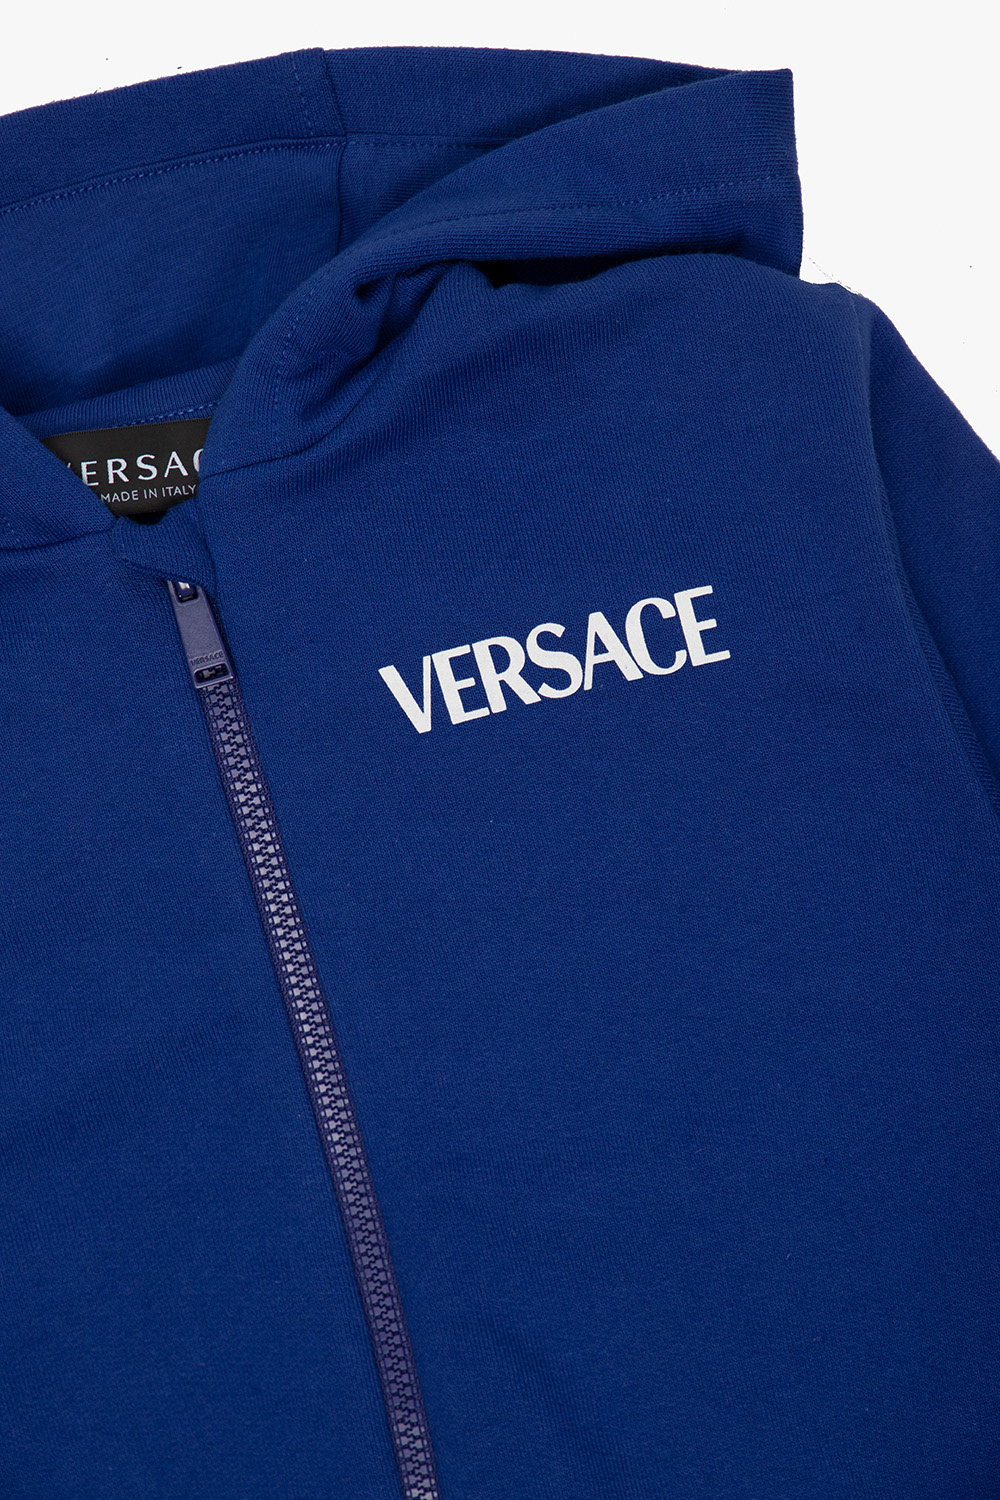 Versace Kids Zip-up looking hoodie